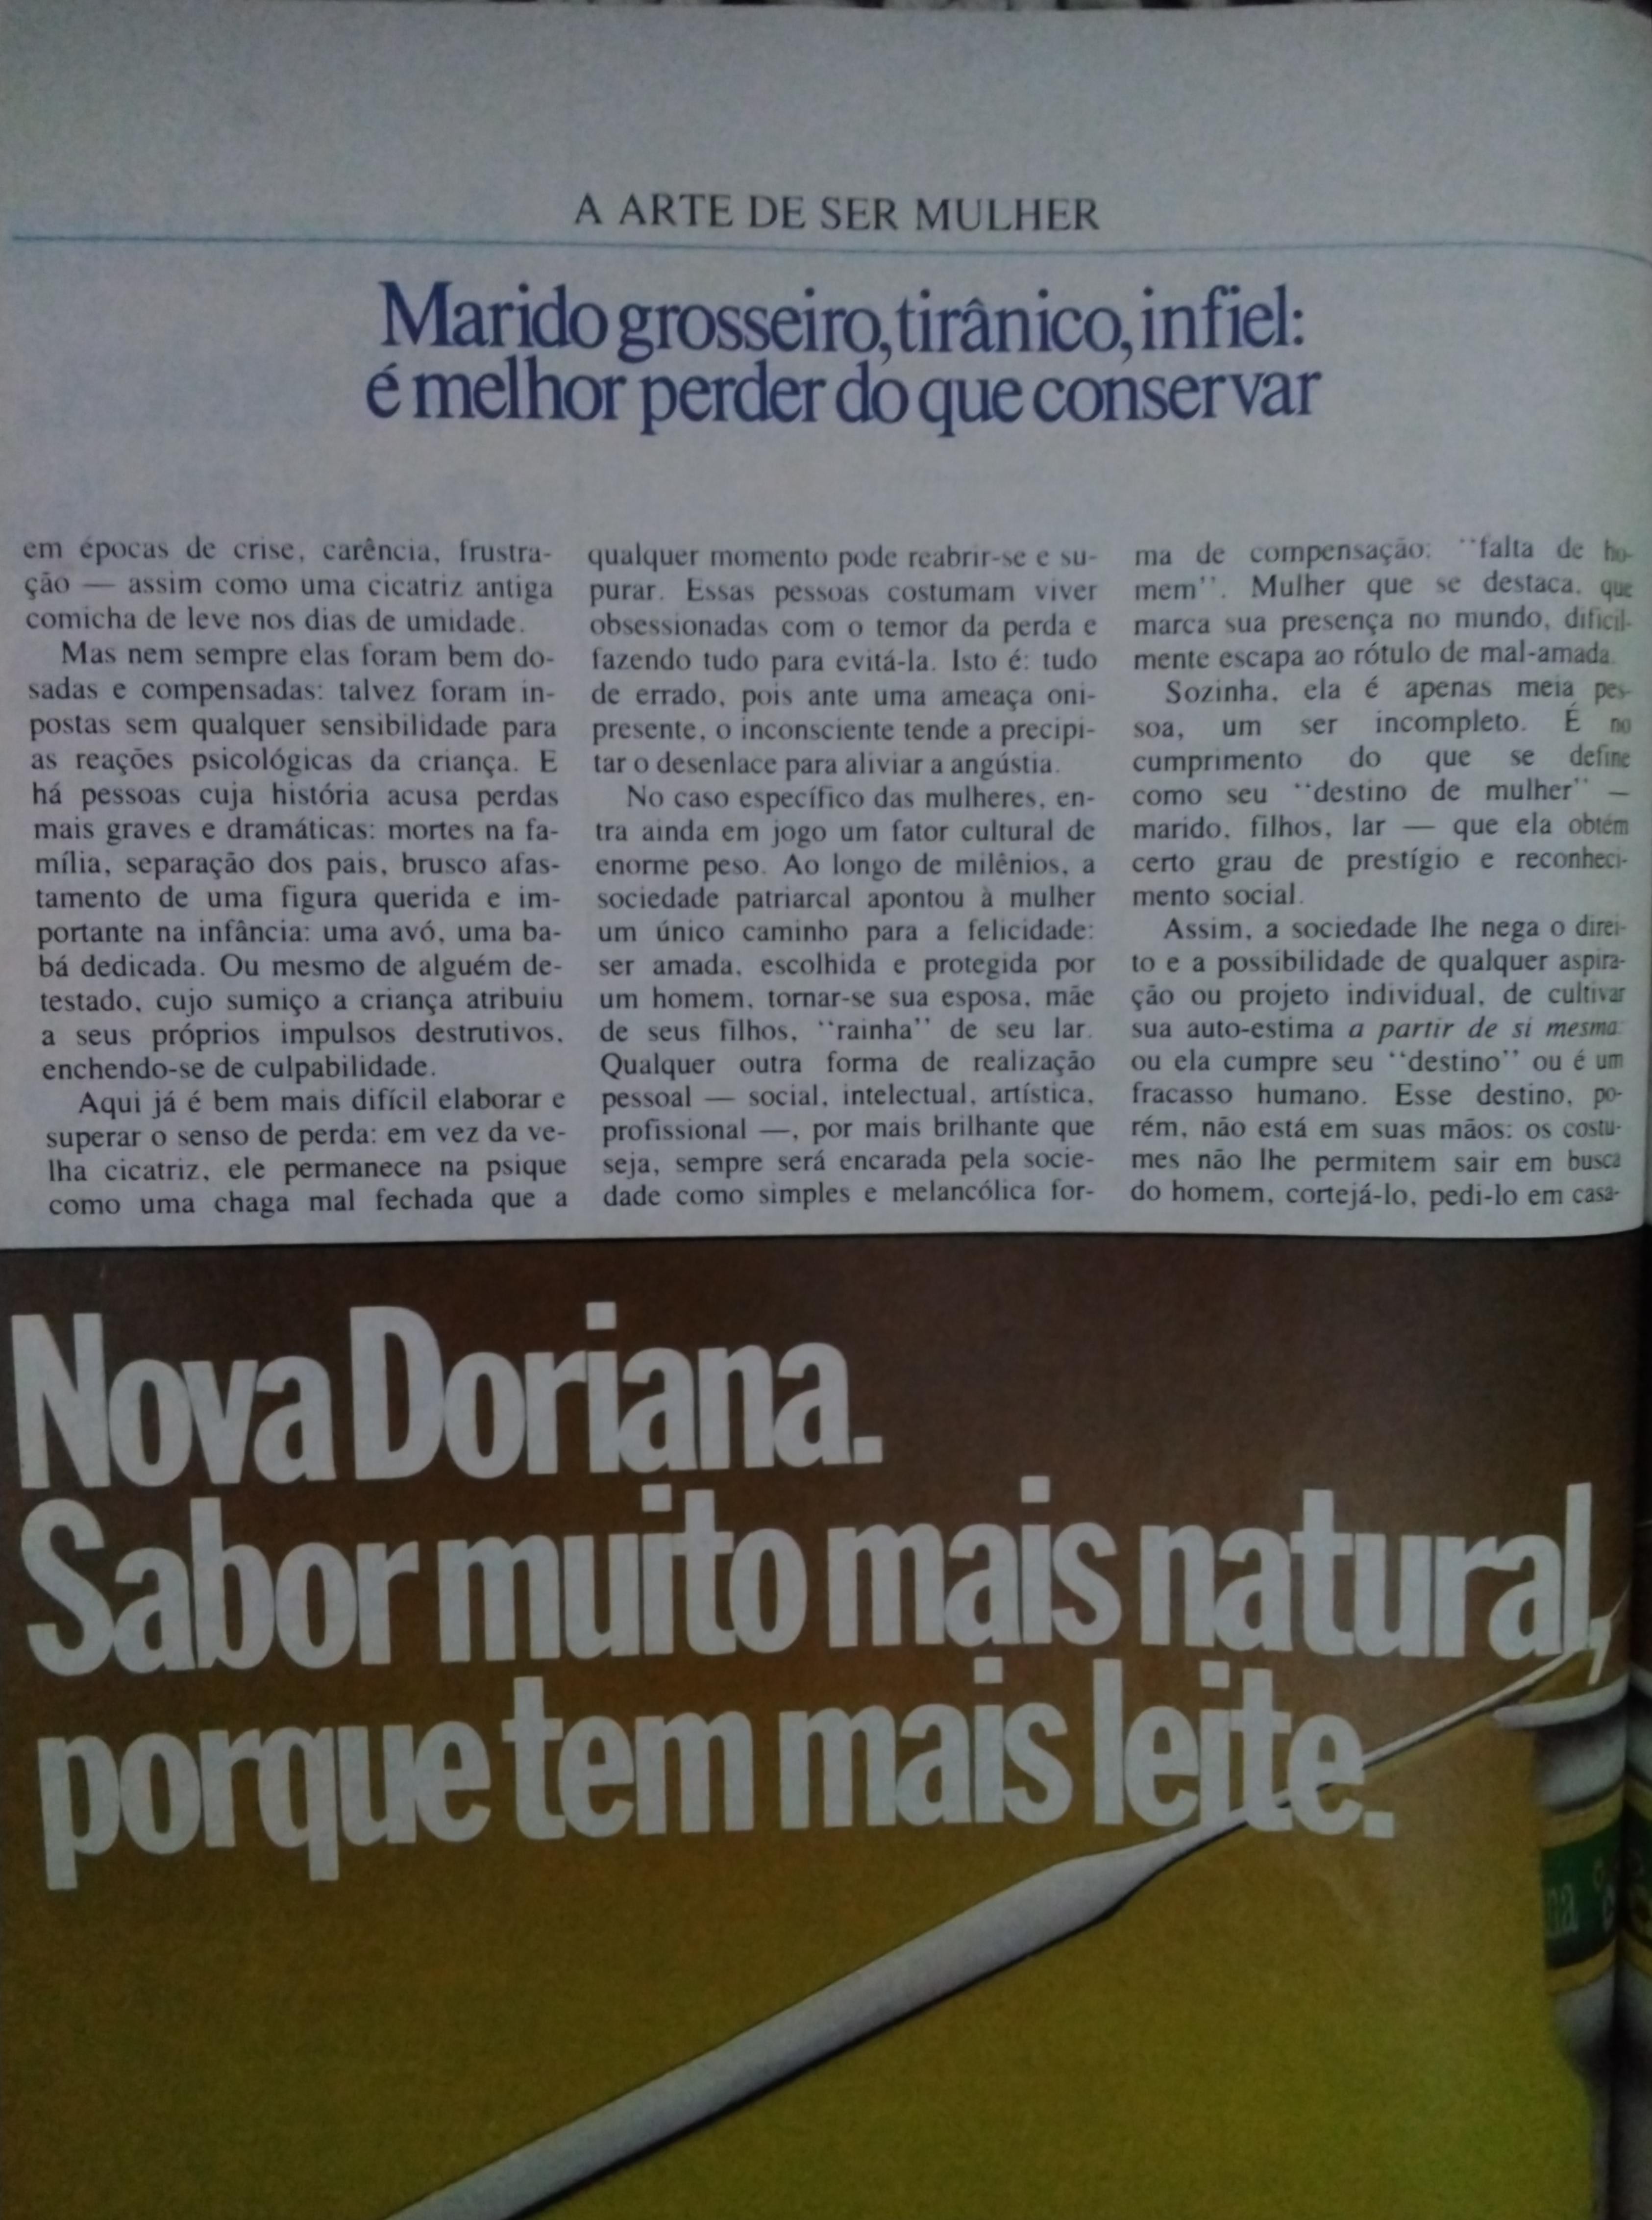 Revista Claudia, nº 285, junho de 1985. Pg. 164.